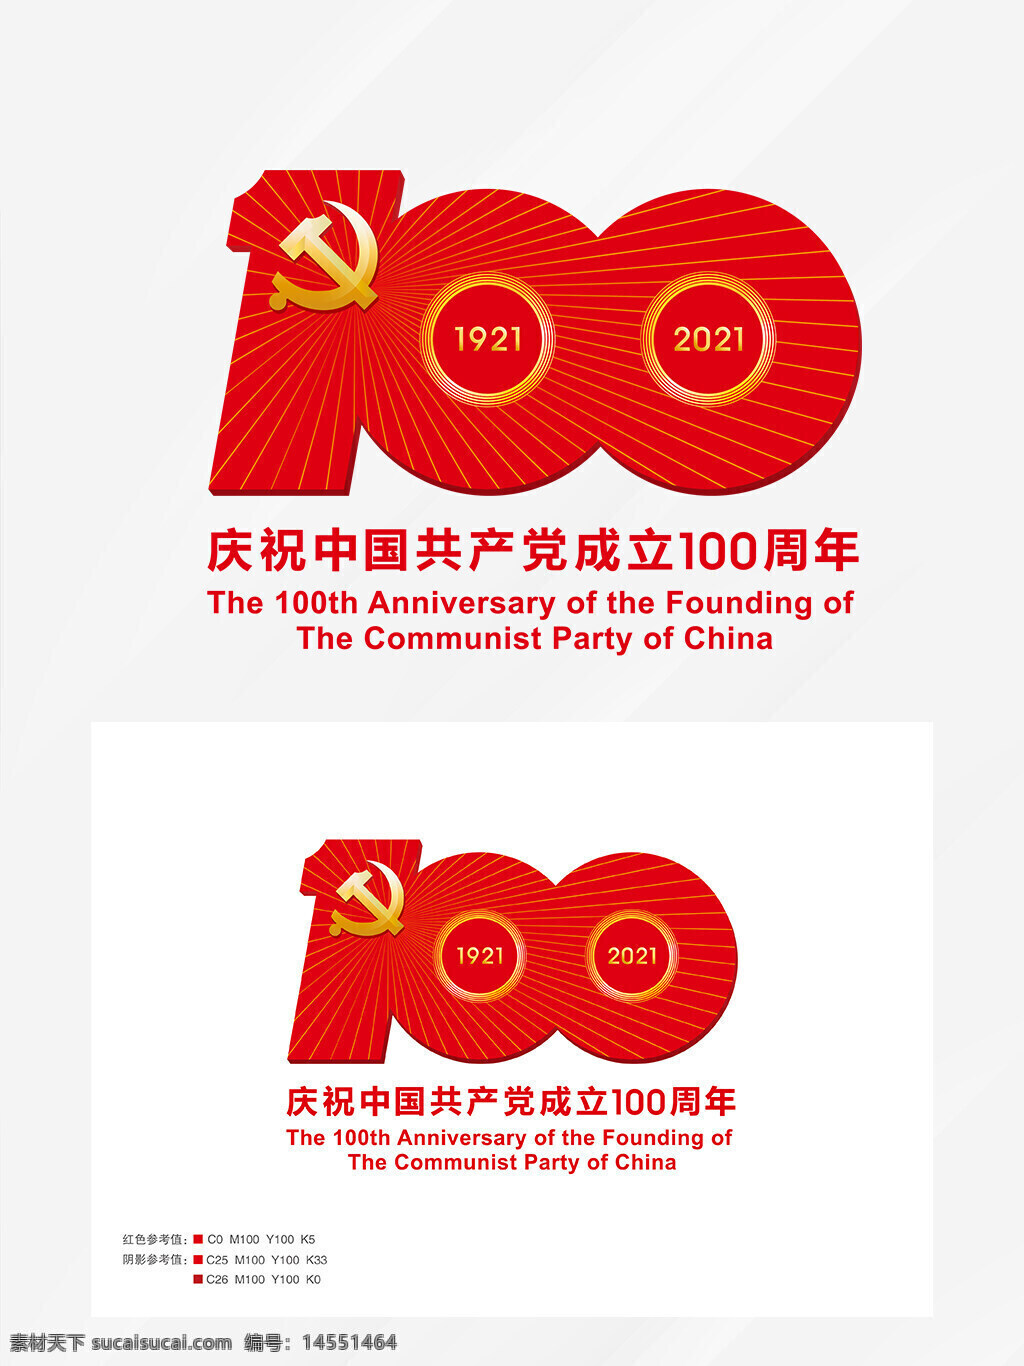 中国共产党成立100周年庆祝活动标识 标牌 100周年 庆祝